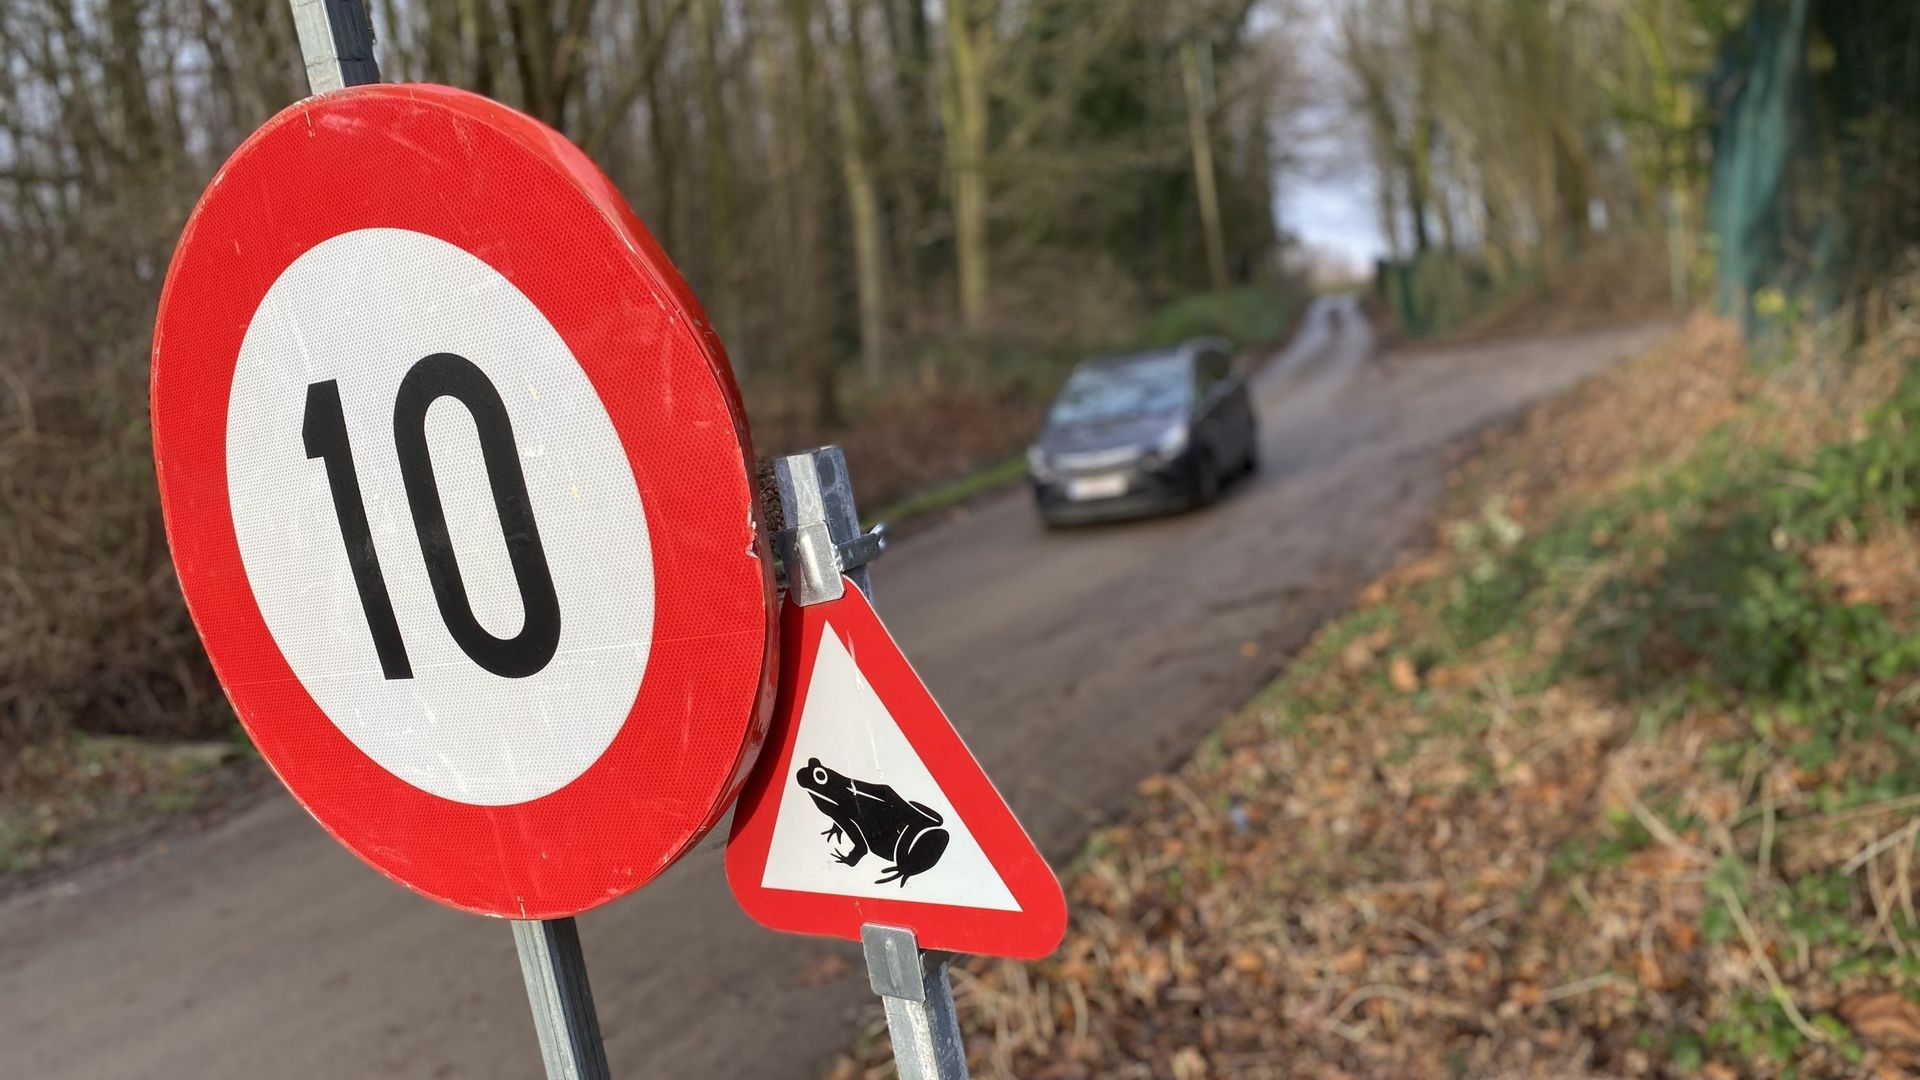 La Trassersweg à Neder-over-Heembeek voit passer chaque année des batraciens. Pour leur sécurité, la vitesse y est limitée à 10 km/h.